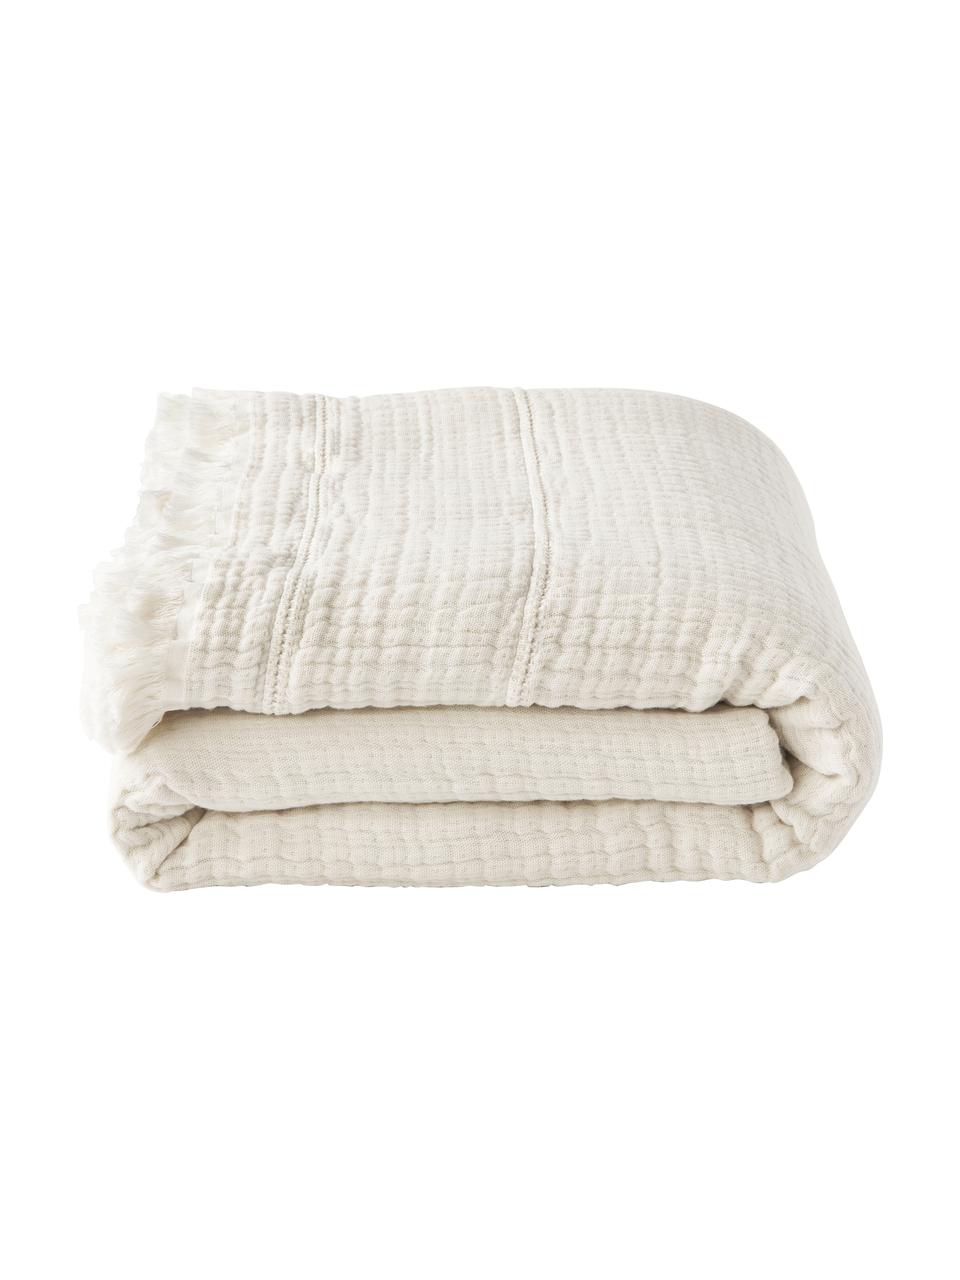 Bavlněný přehoz s třásněmi Kailani, 100 % bavlna
Hustota tkaniny 225 TC, komfortní kvalita

Bavlněné povlečení je měkké na dotek, dobře absorbuje vlhkost a je vhodné pro alergiky., Béžová, Š 180 cm, D 250 cm